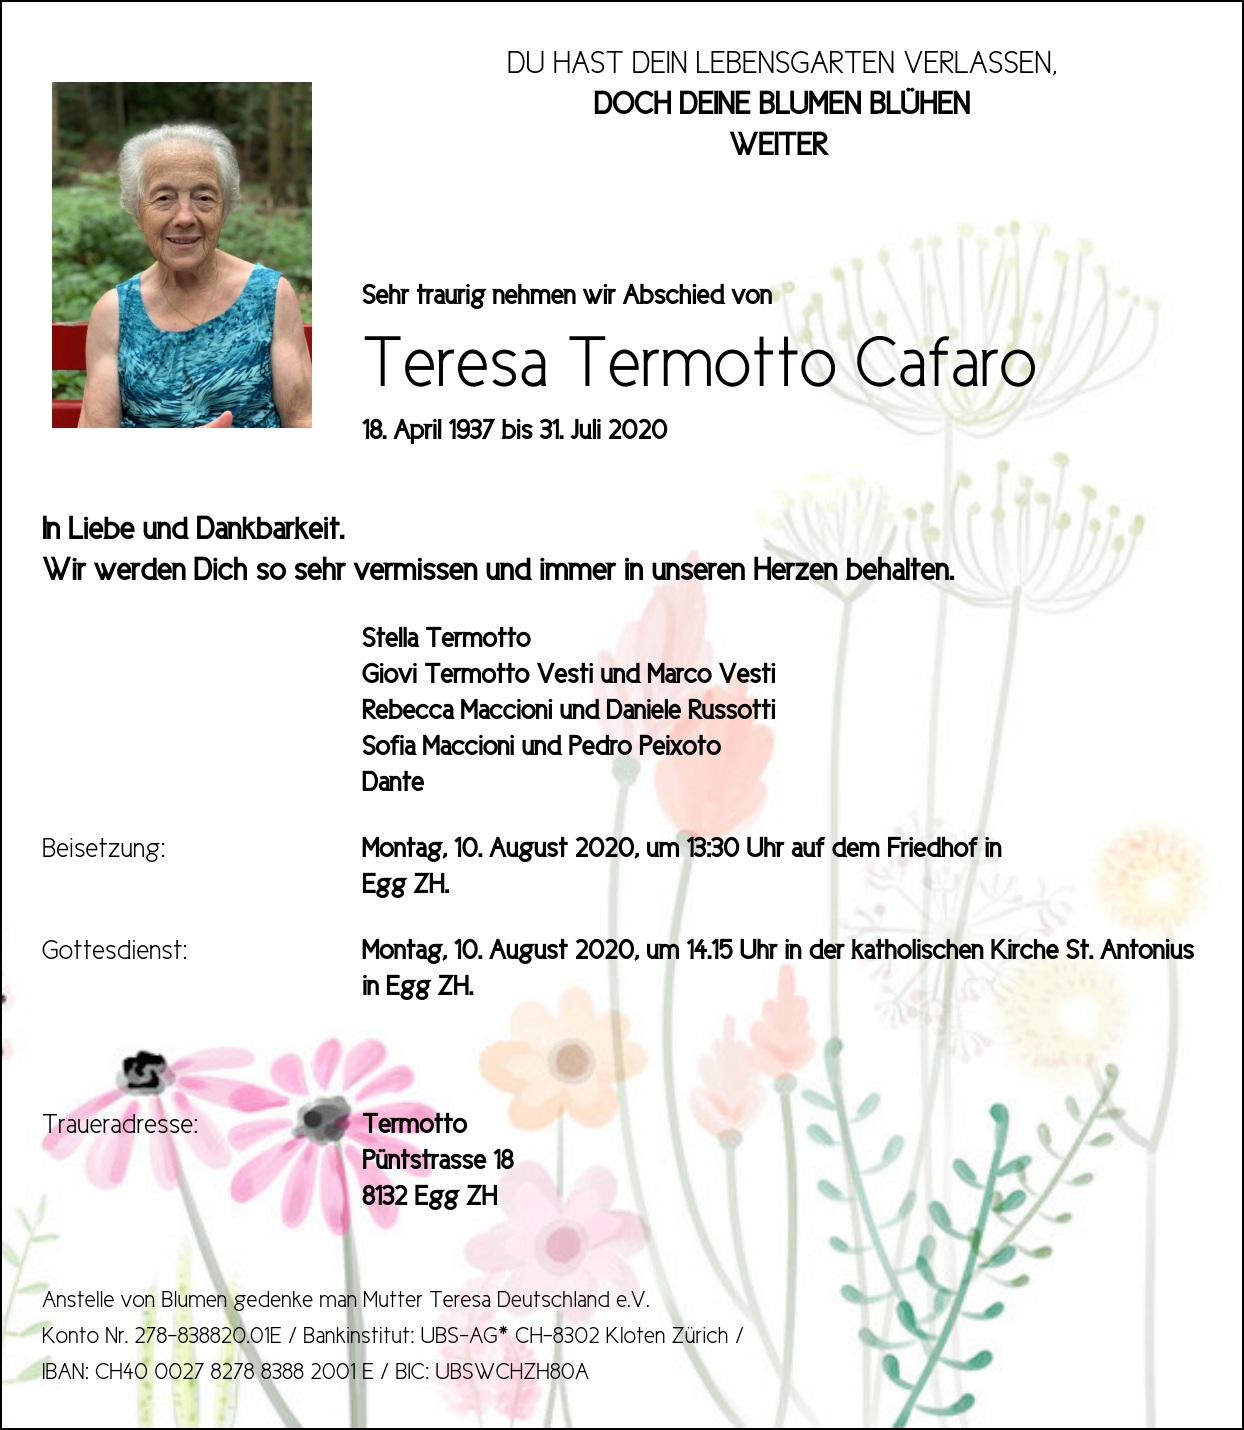 Teresa Termotto